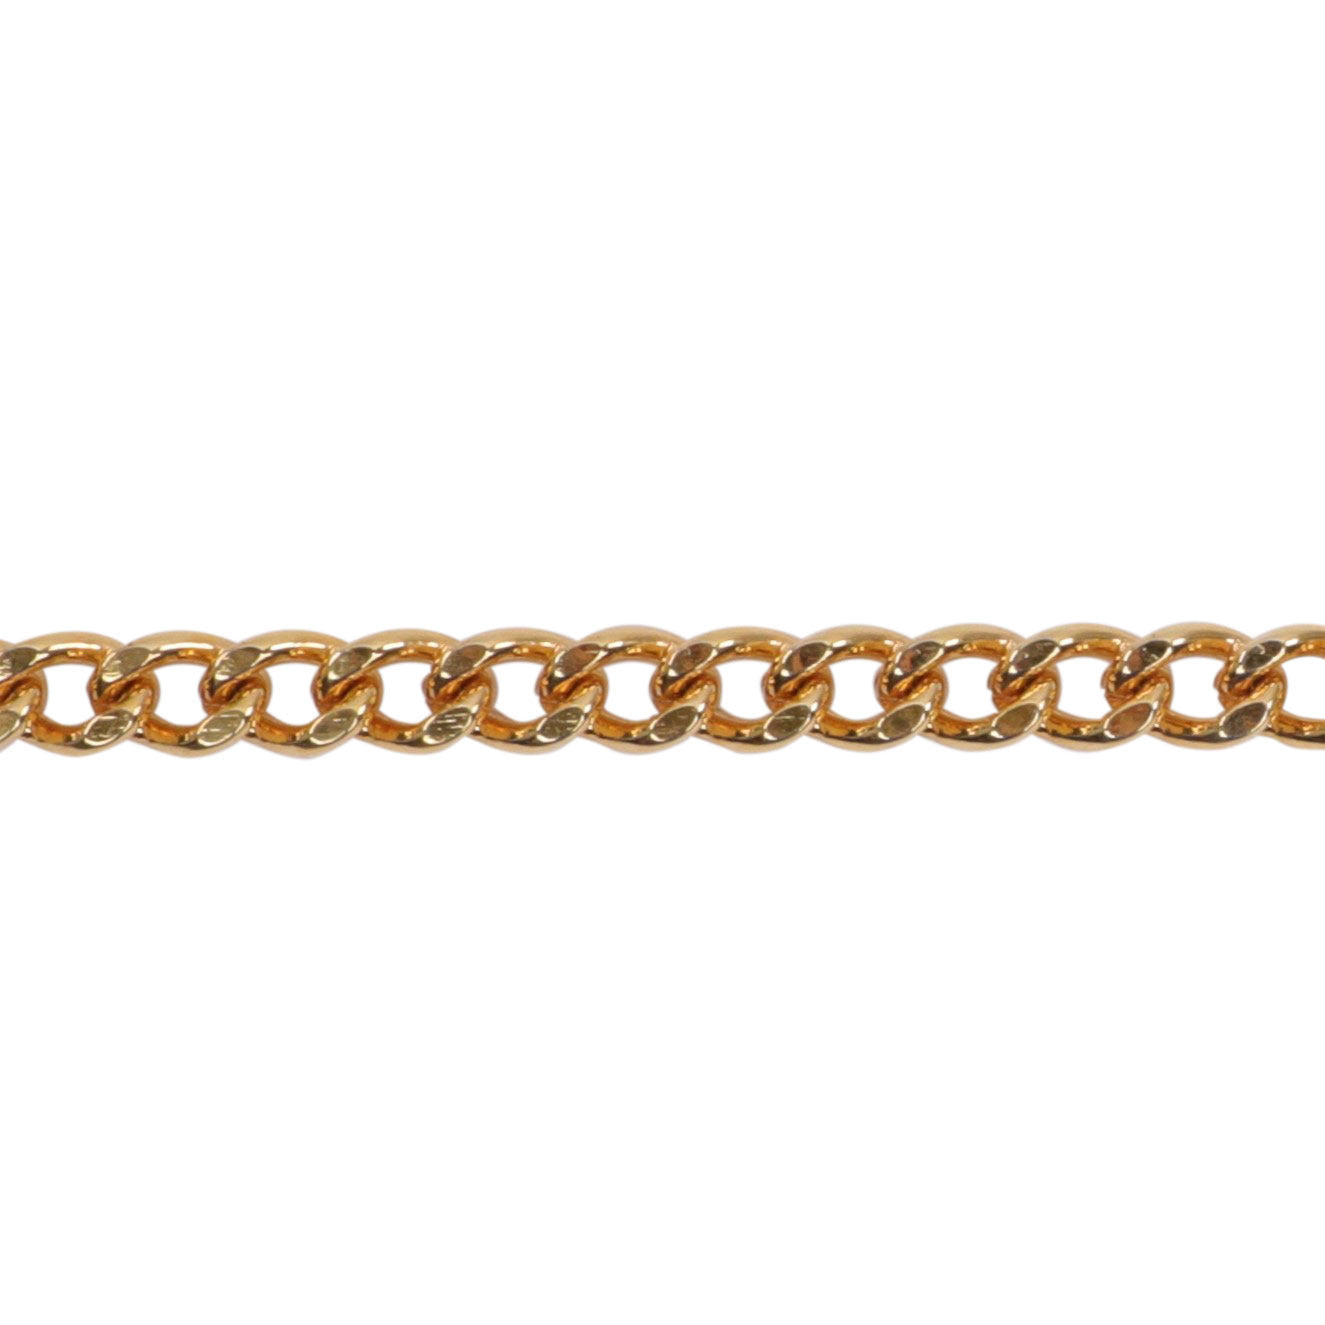 Chain strap / チェーンストラップ